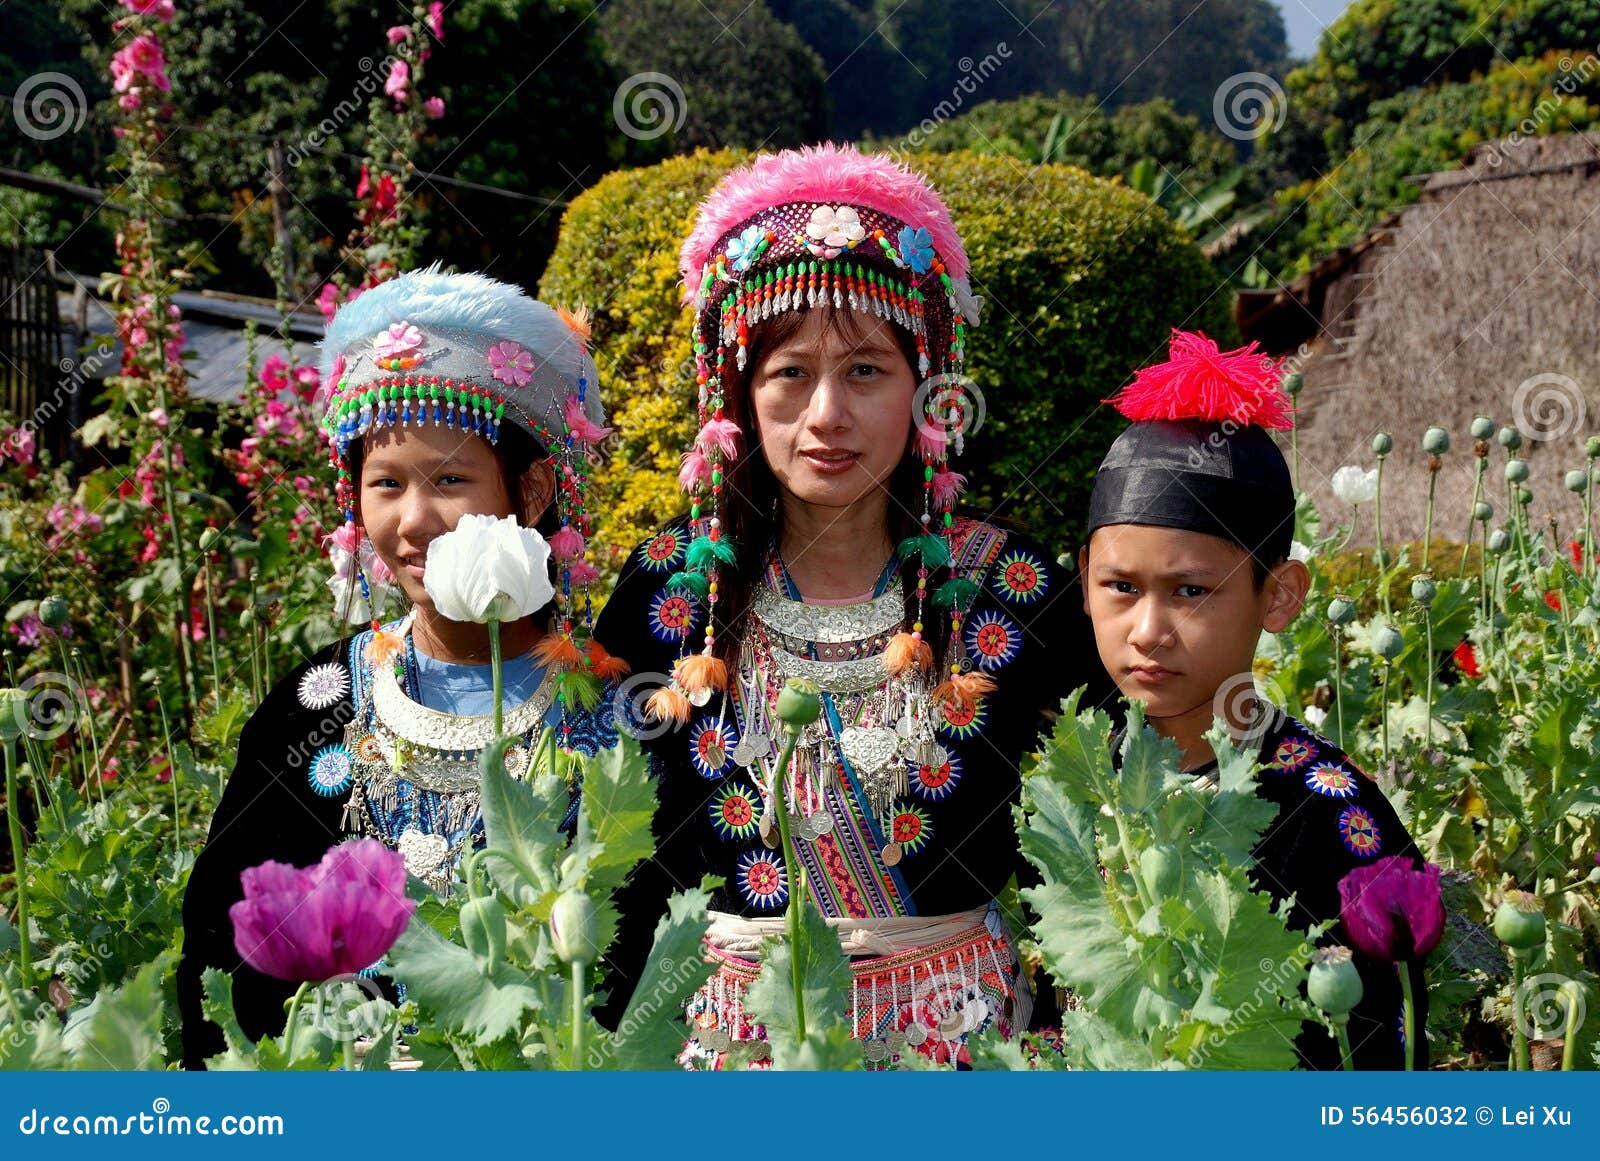 Doi Poi Thailand Three Thai Women In Traditional Clothing